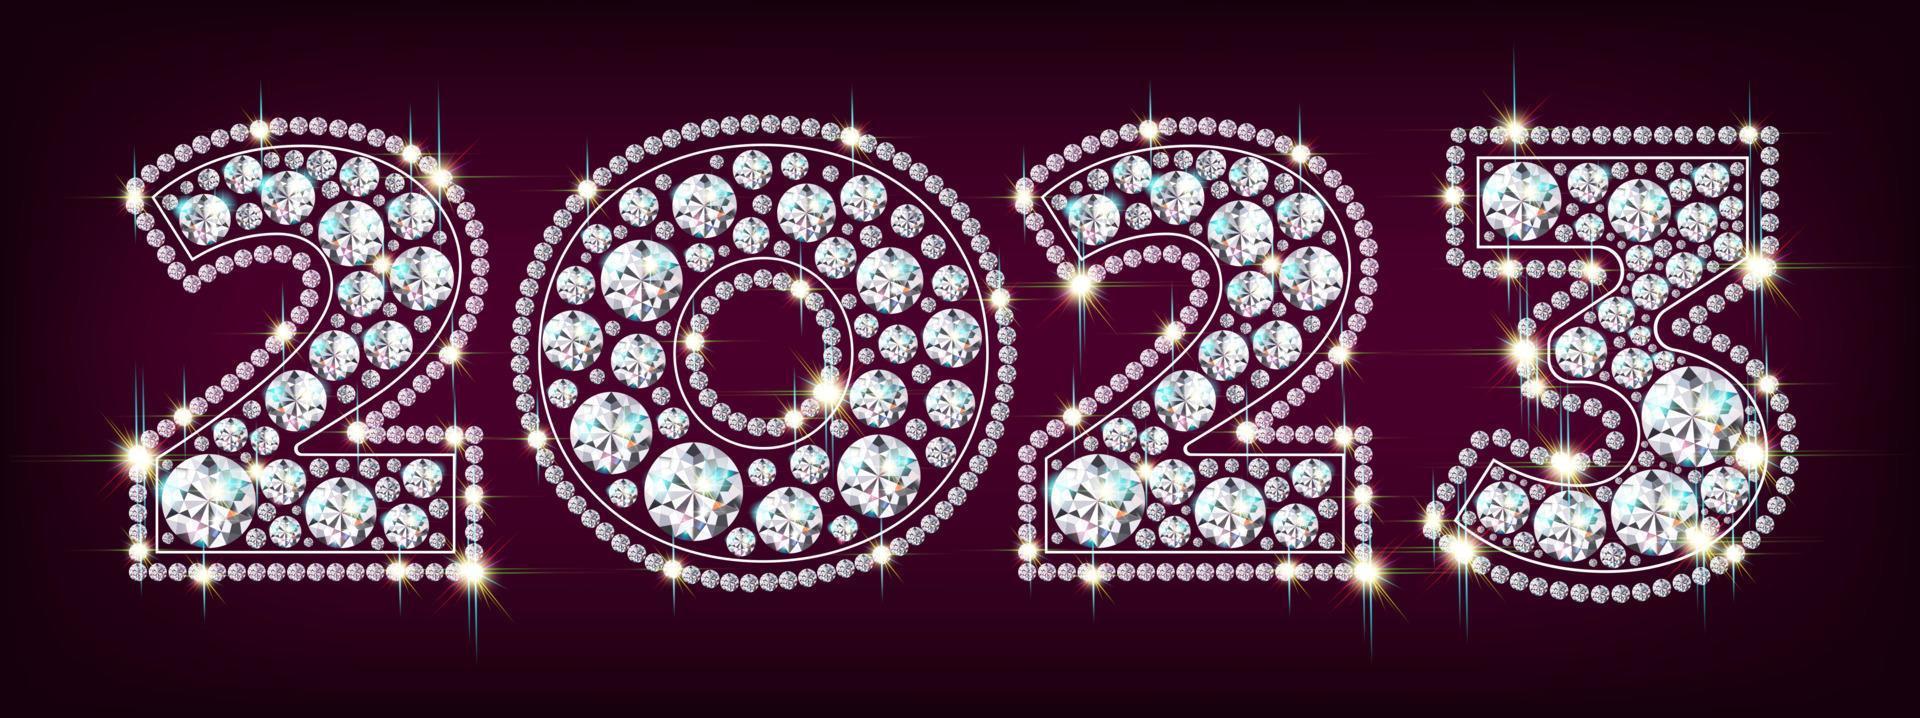 año nuevo 2023 lujosos números de piedras preciosas de diamantes que brillan sobre un fondo de confeti plateado que cae. fondo rojo, ilustración vectorial. vector